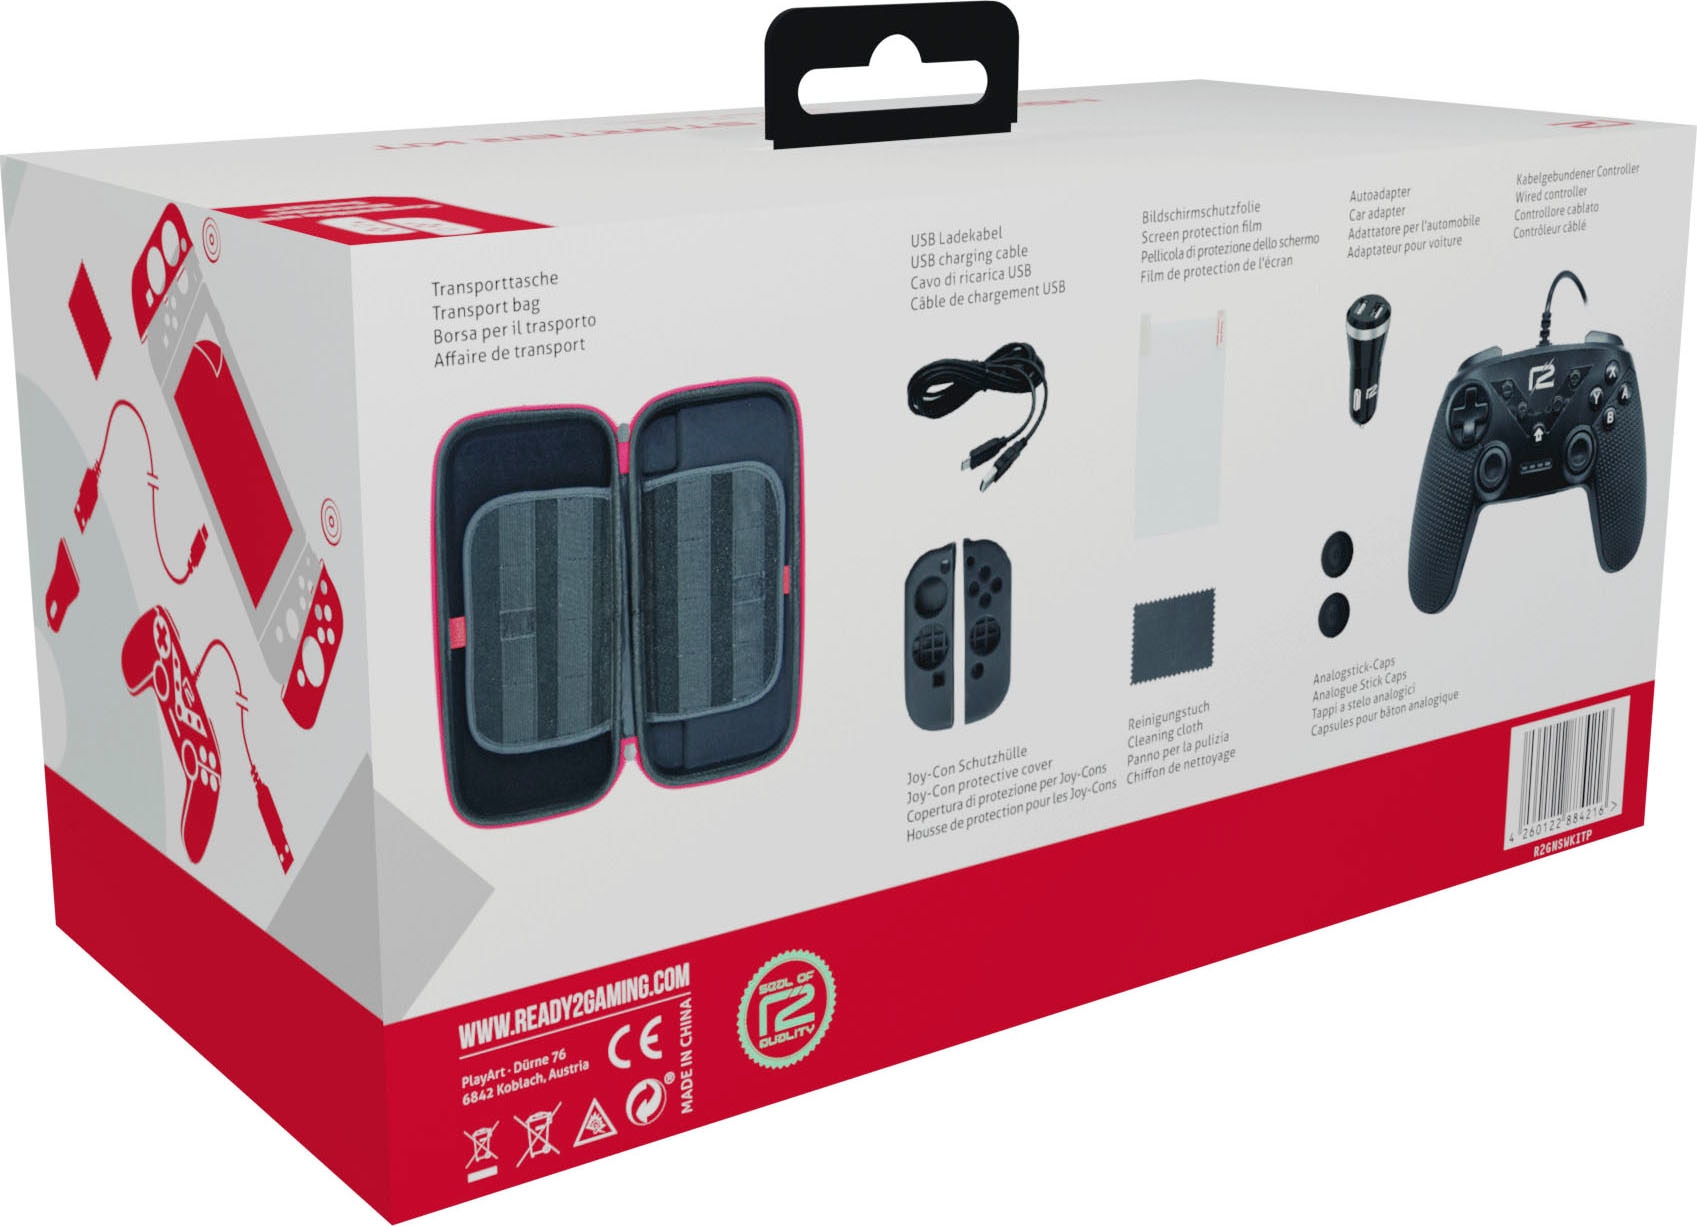 Nintendo-Controller »Nintendo Switch Premium Starter Kit«